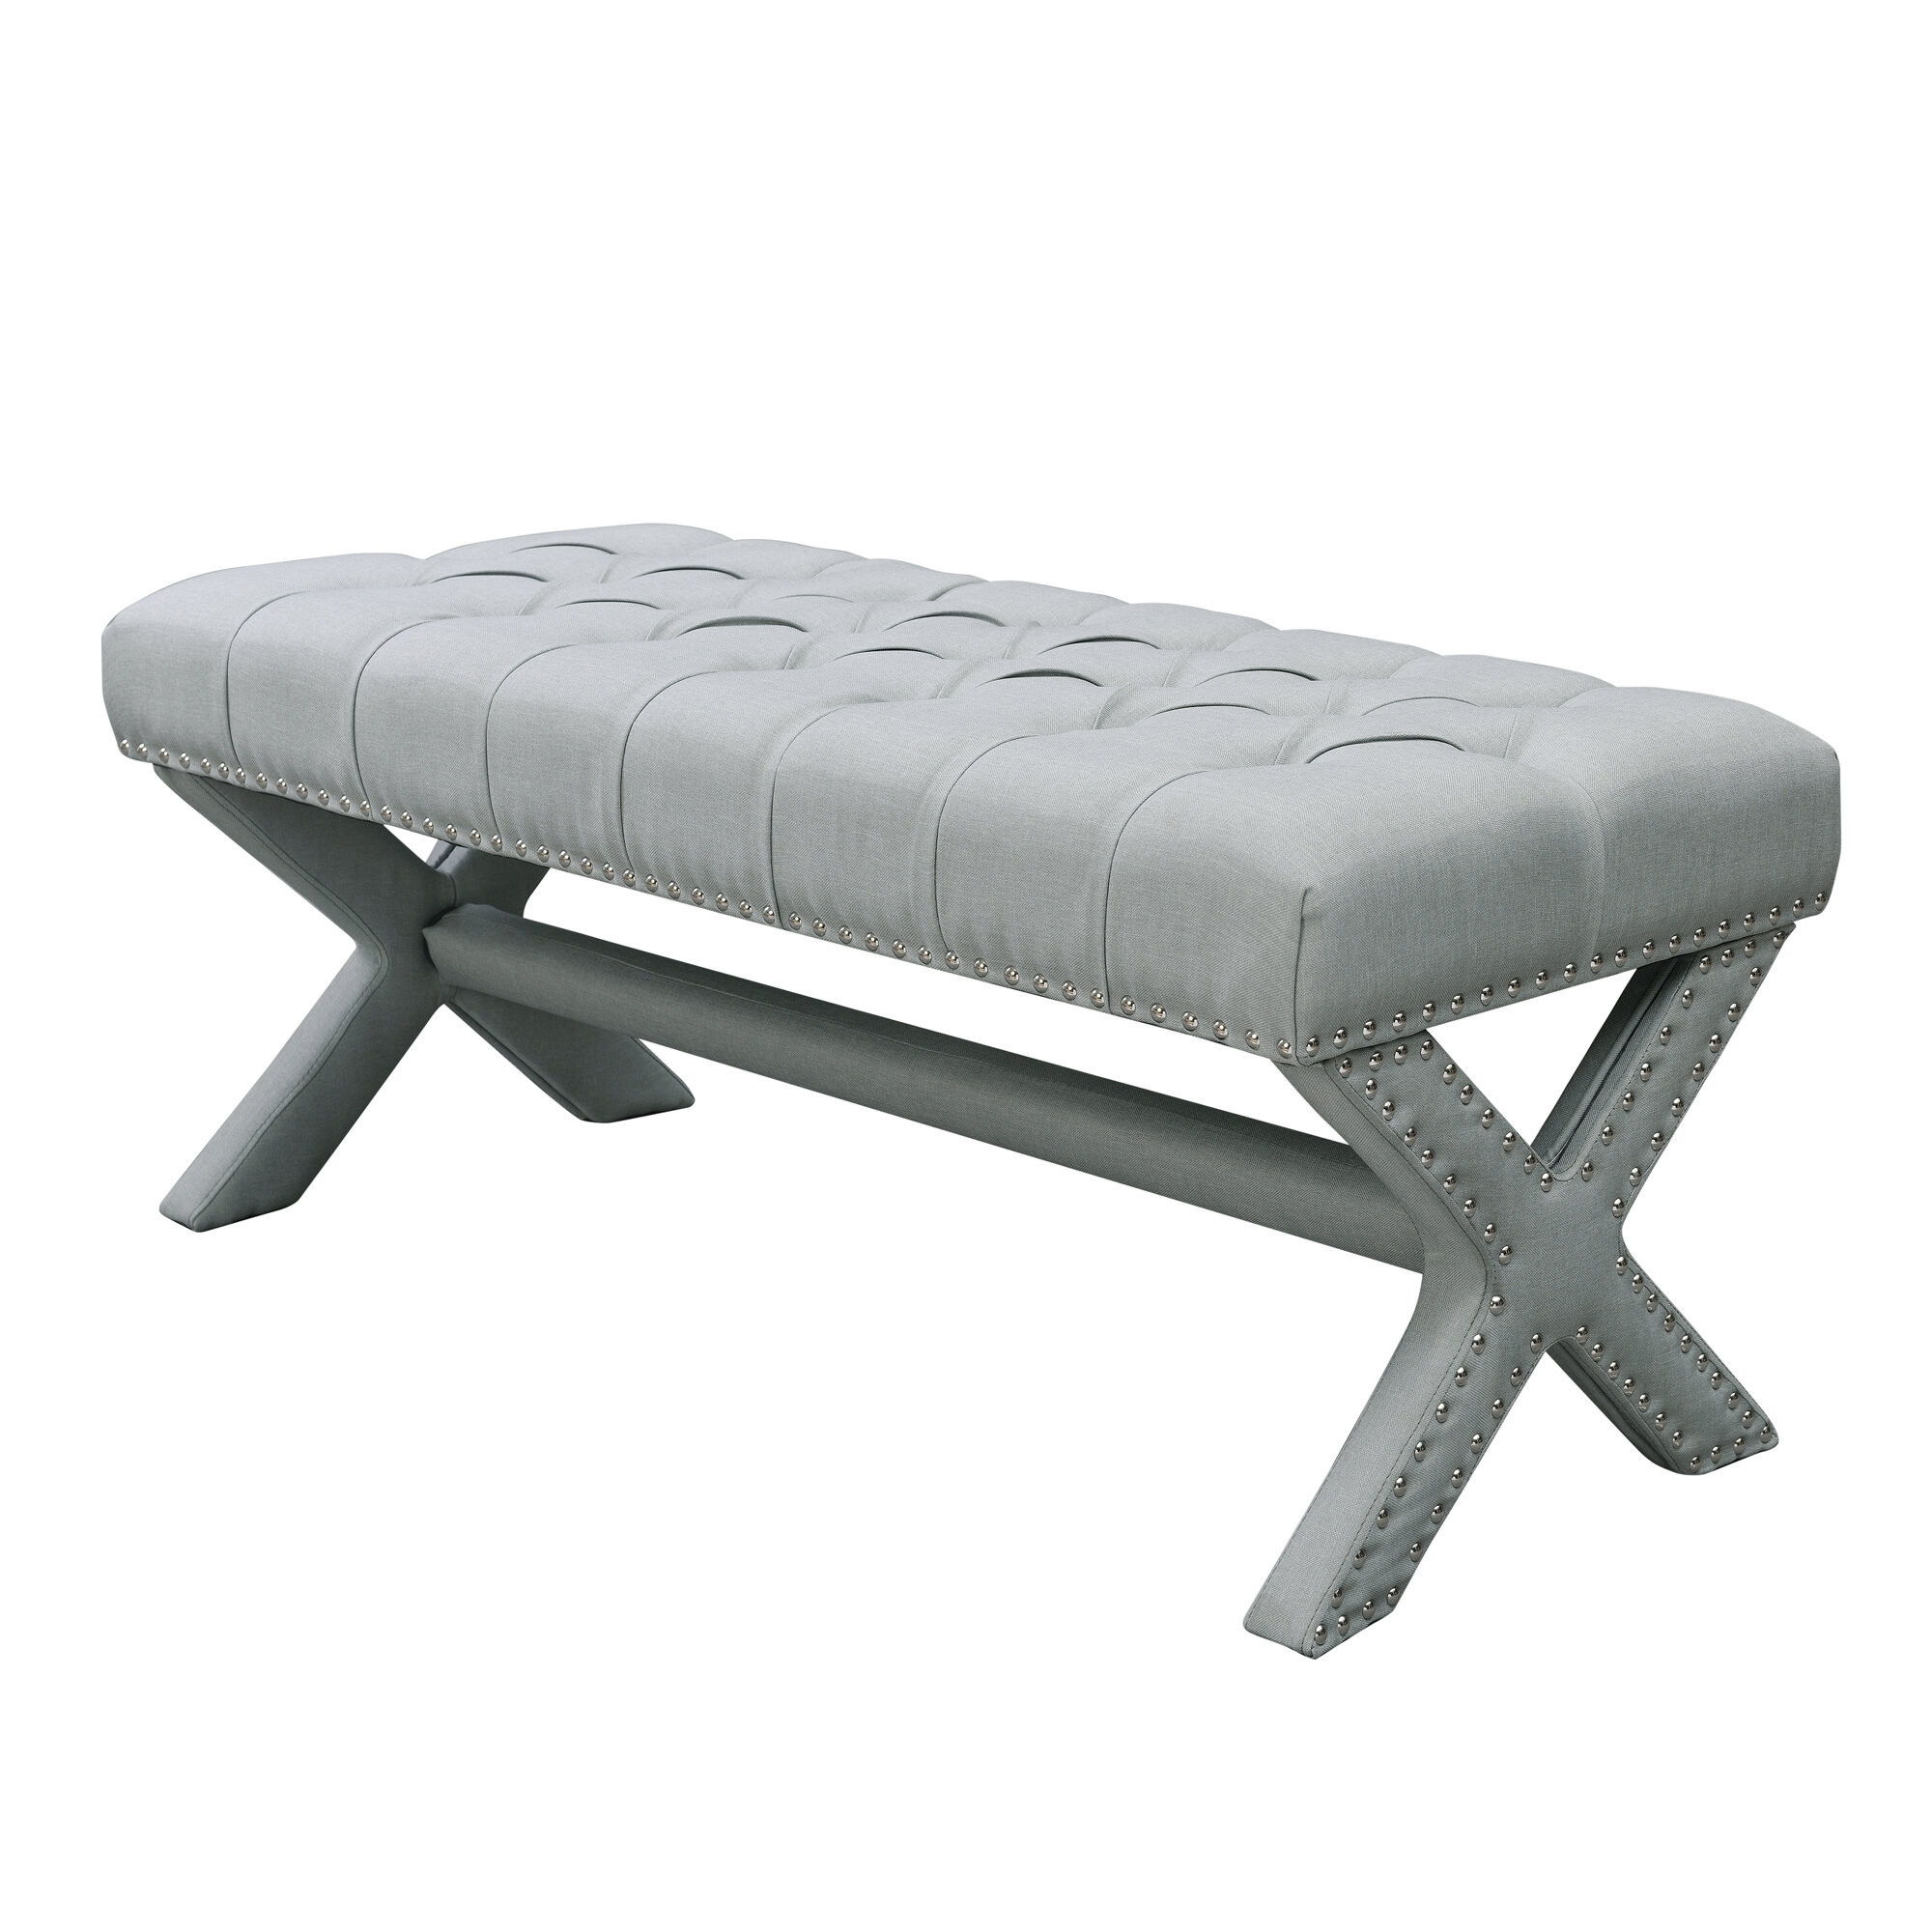 45" Light Gray Upholstered Linen Bench-490912-1